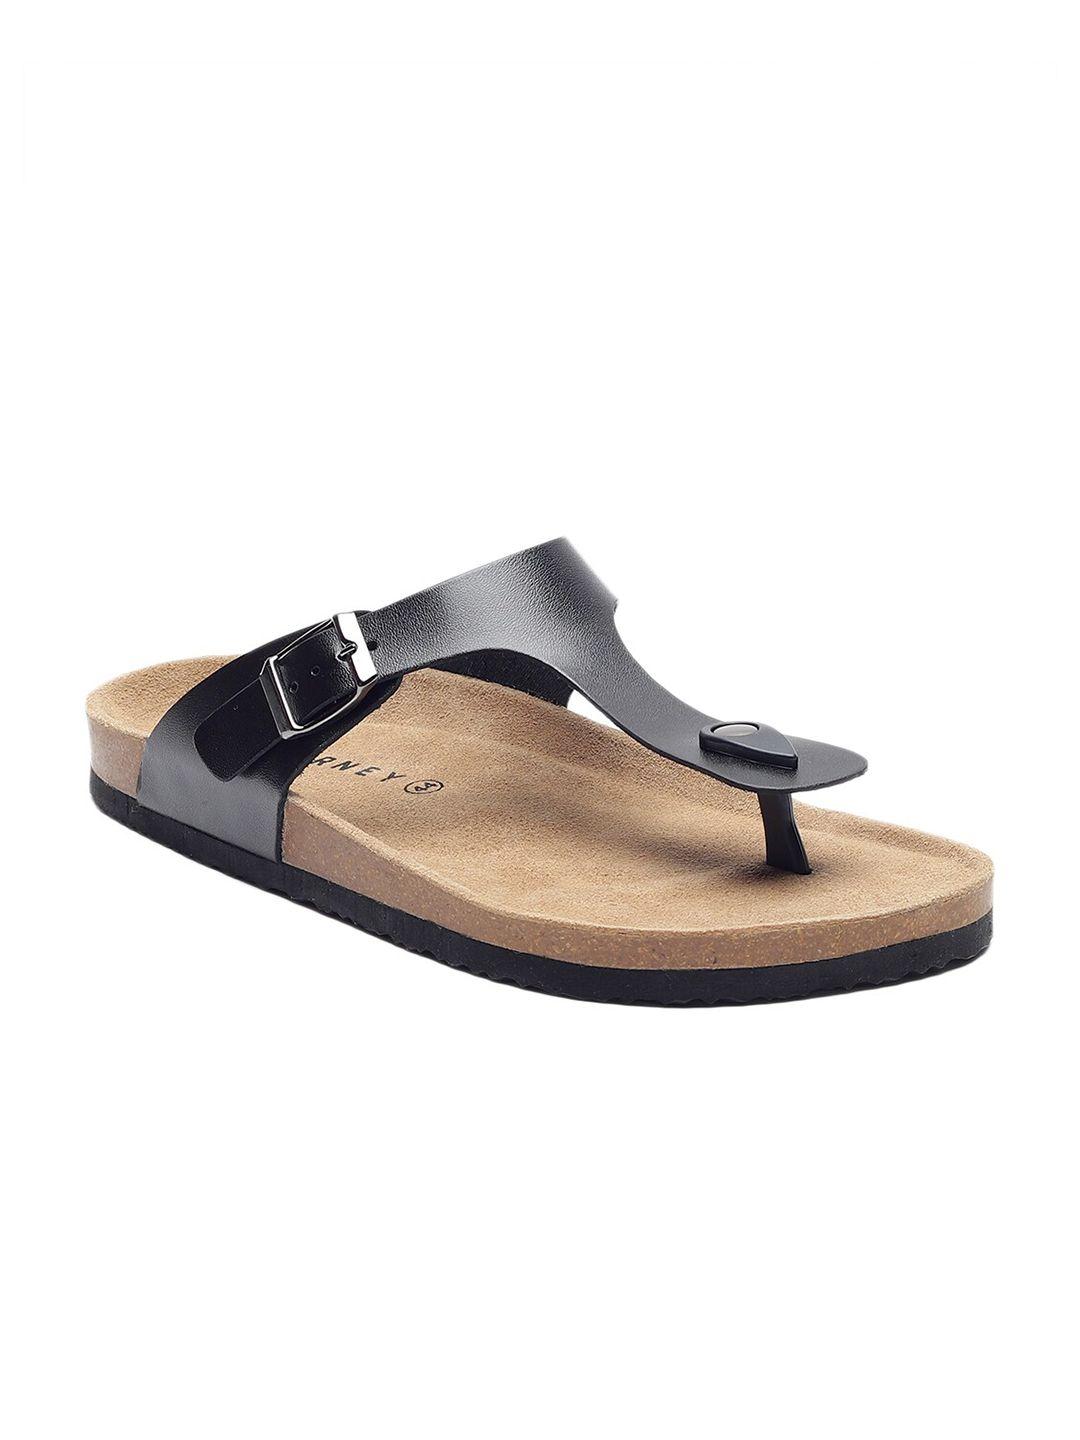 hf journey men nivera open toe comfort sandals with buckle detail